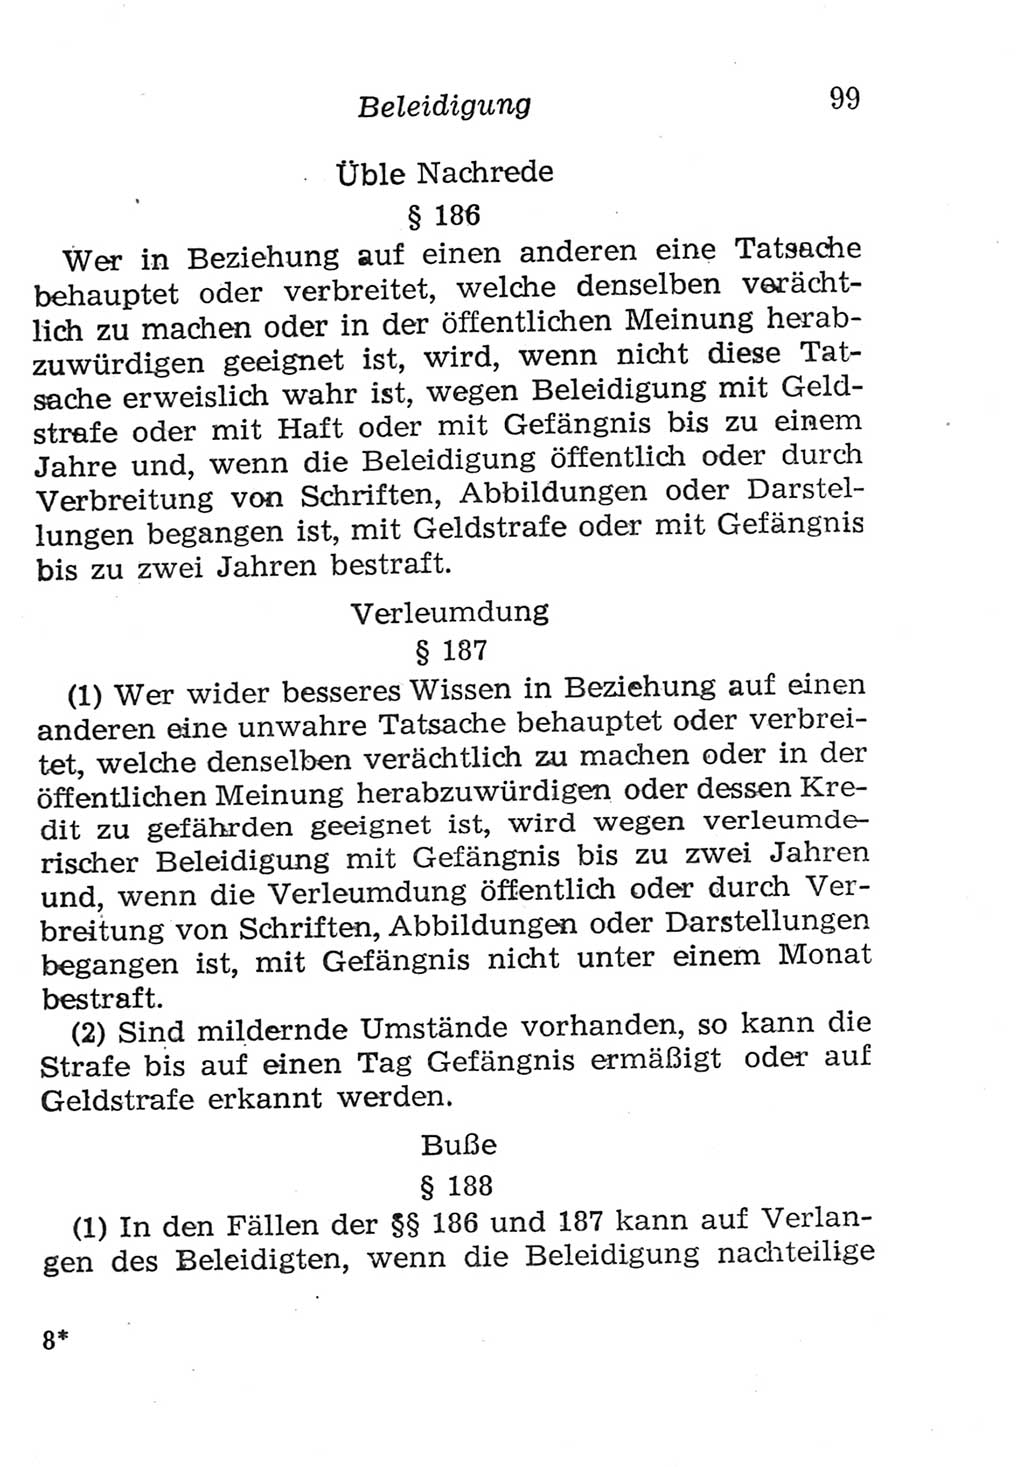 Strafgesetzbuch (StGB) und andere Strafgesetze [Deutsche Demokratische Republik (DDR)] 1957, Seite 99 (StGB Strafges. DDR 1957, S. 99)